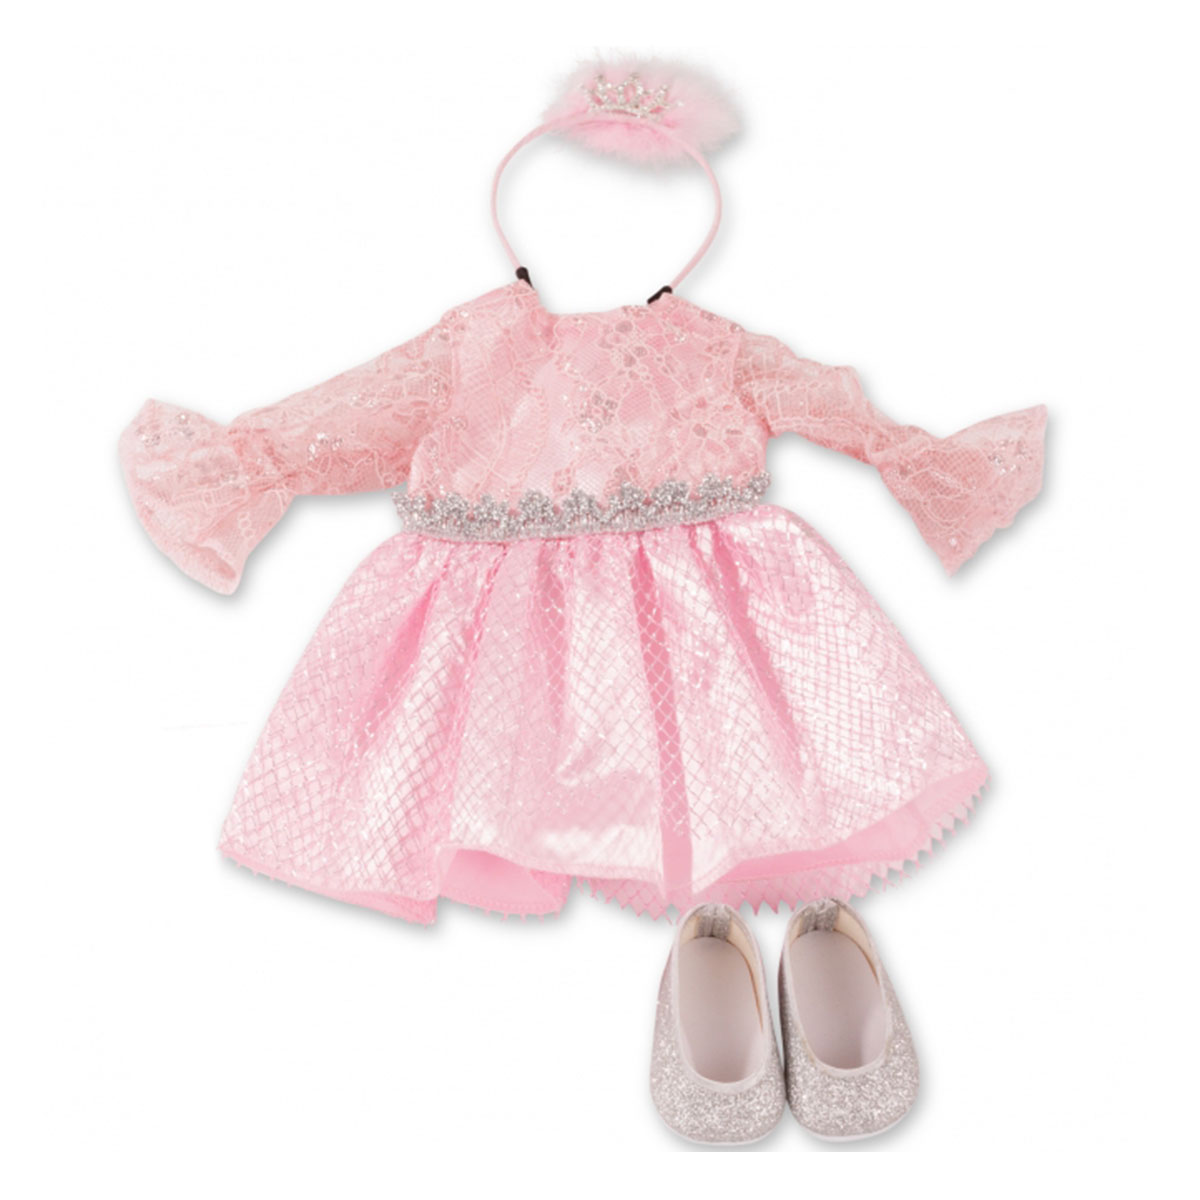 Набор одежды Gotz Принцесса для куклы 36 см 3403320